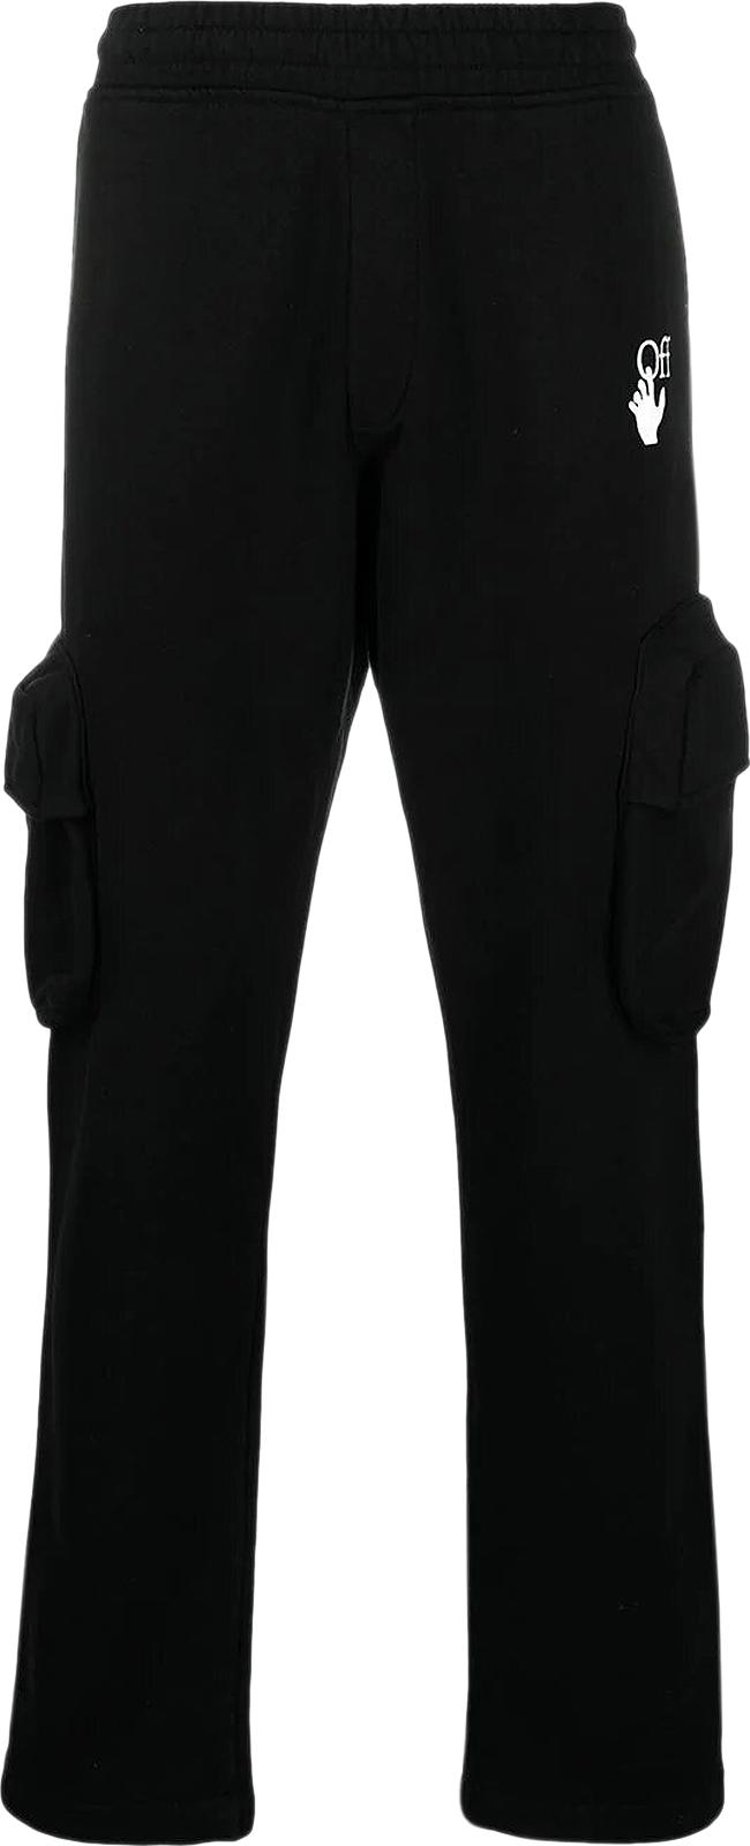 Спортивные брюки Off-White Marker Cargo Sweatpant 'Black/Fuchsia', черный спортивные брюки vetements cargo black черный